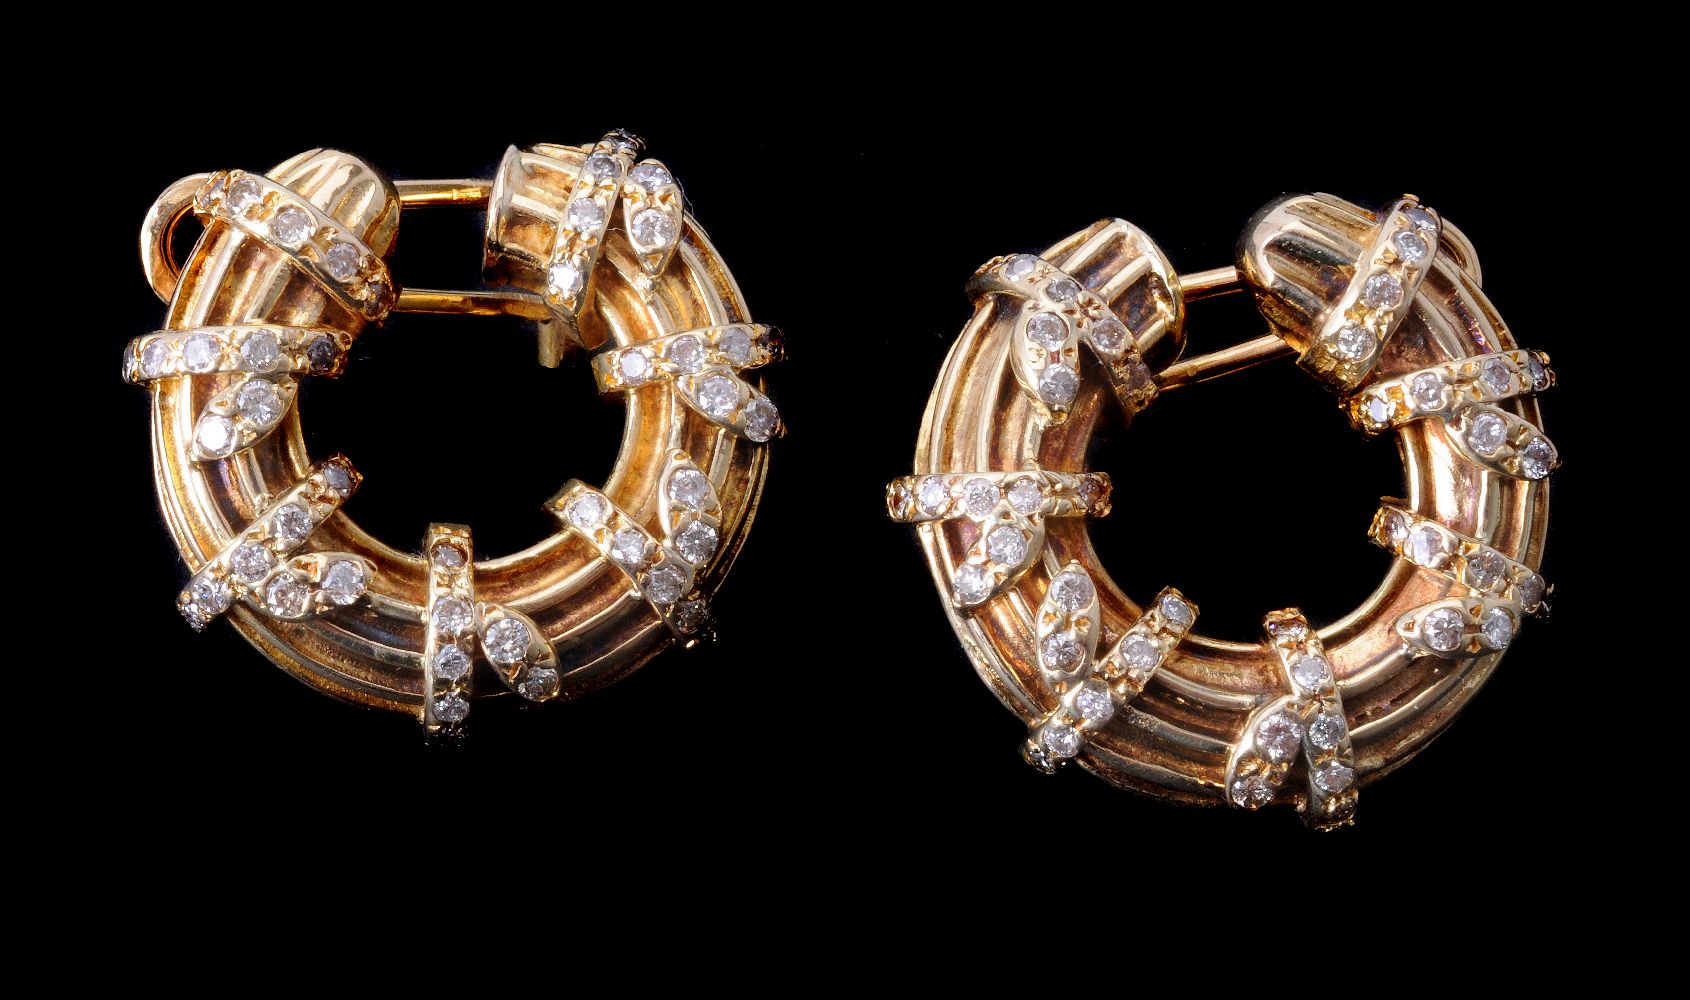 A pair of hooped diamond earrings